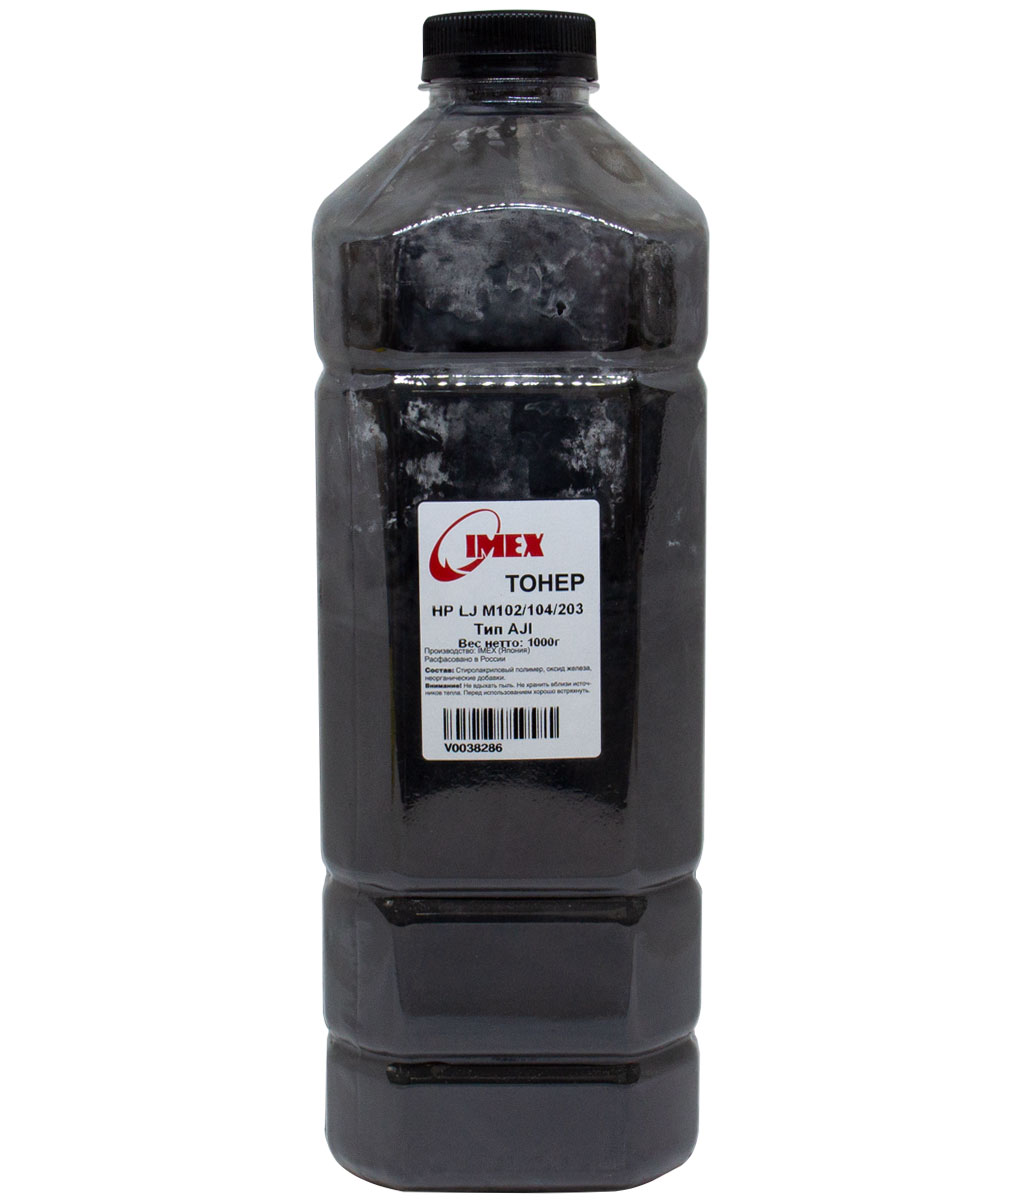 Тонер Imex Тип AJI, бутыль 1 кг, черный, совместимый для LJ M102/104/203, Ultra M106/206, MFP M132/134/227/230 (V0038286)